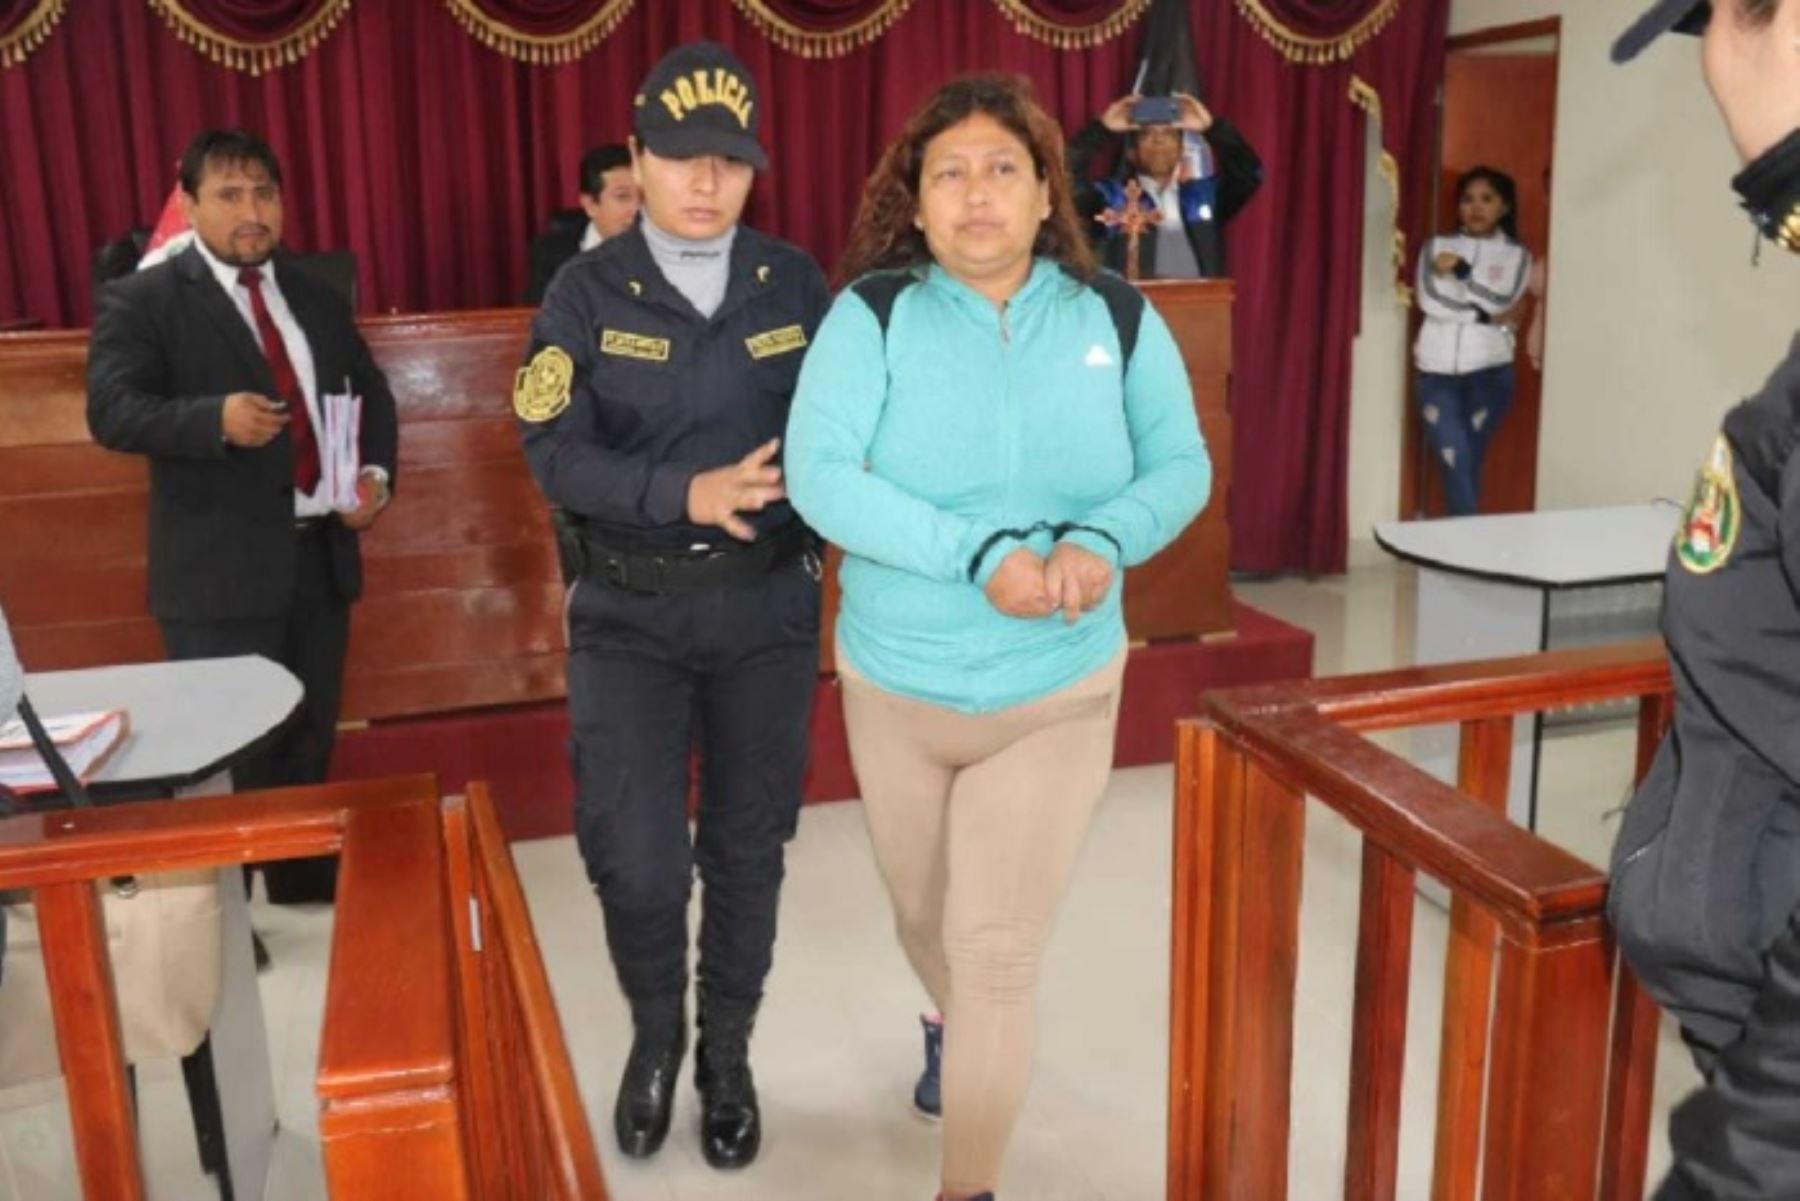 El Juzgado de Investigación Preparatoria de Huarmey, en la región Áncash, amplió hoy, por 72 horas, el plazo de detención preliminar en contra de Danyk Farfán Retto, la mujer acusada de haber abusado sexualmente de sus dos menores hijas;